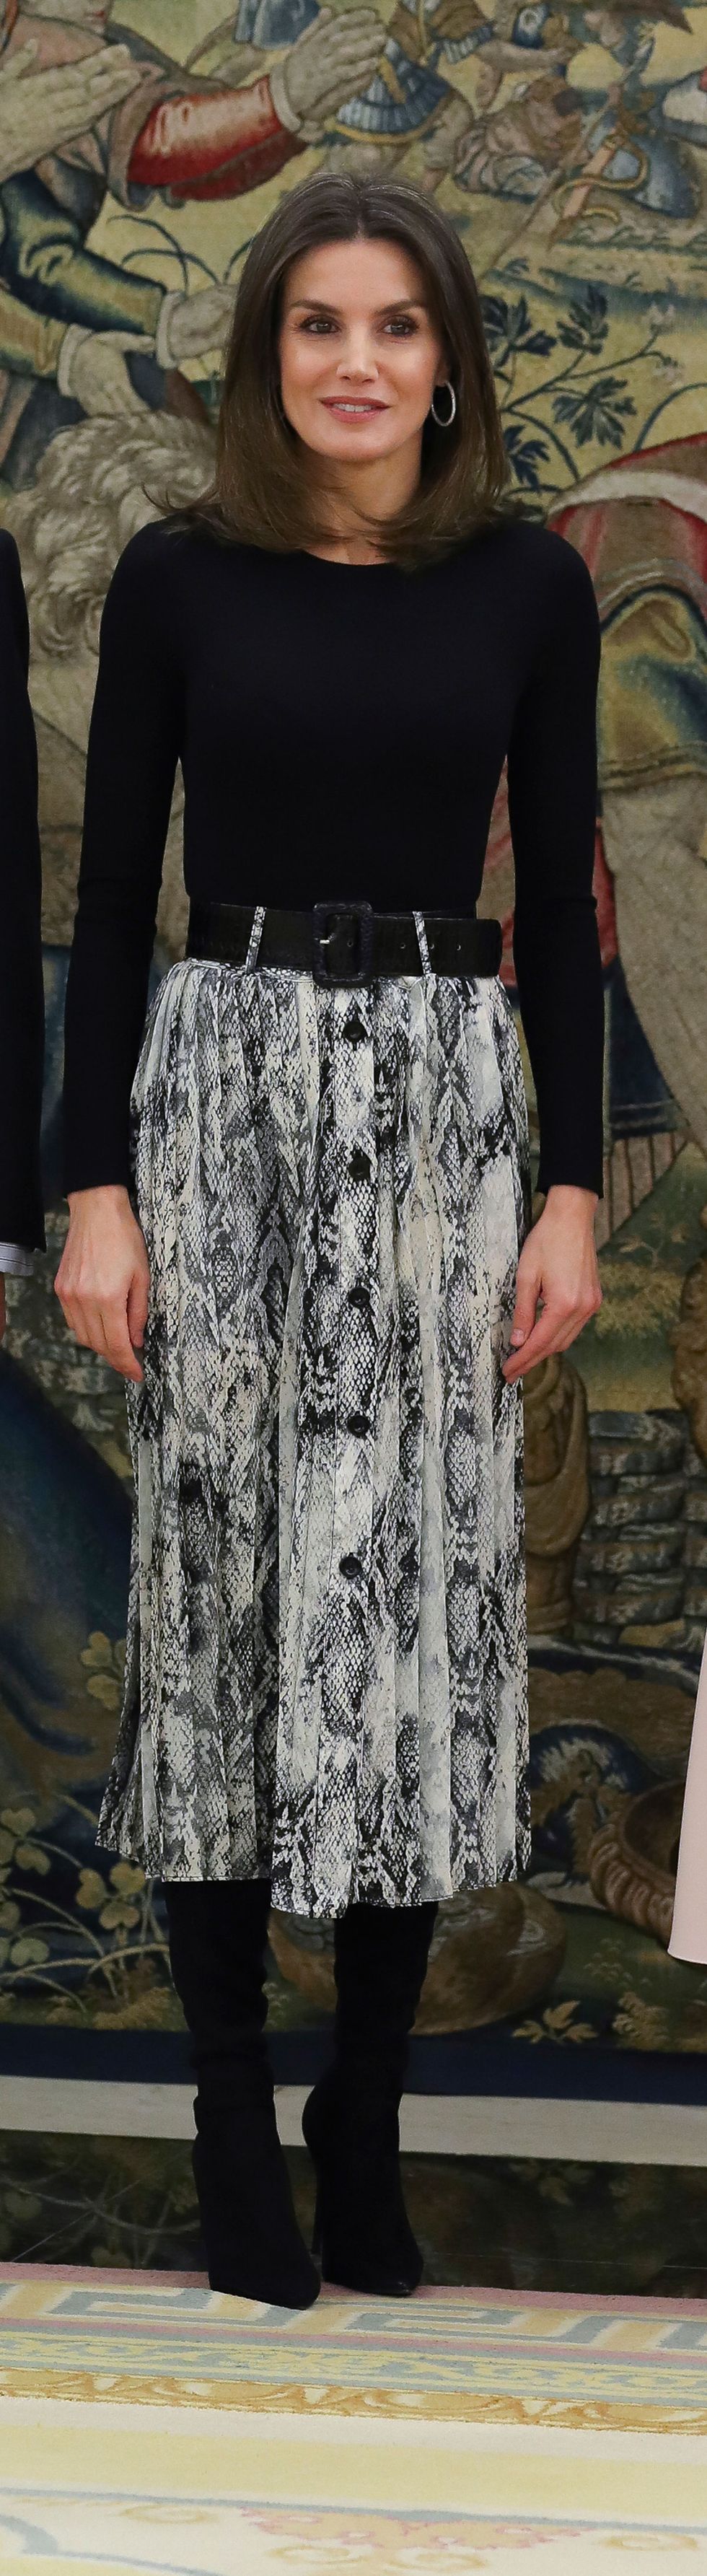 Playa disco patrimonio La reina Letizia tiene la falda de Zara con estampado serpiente que le  querrás copiar